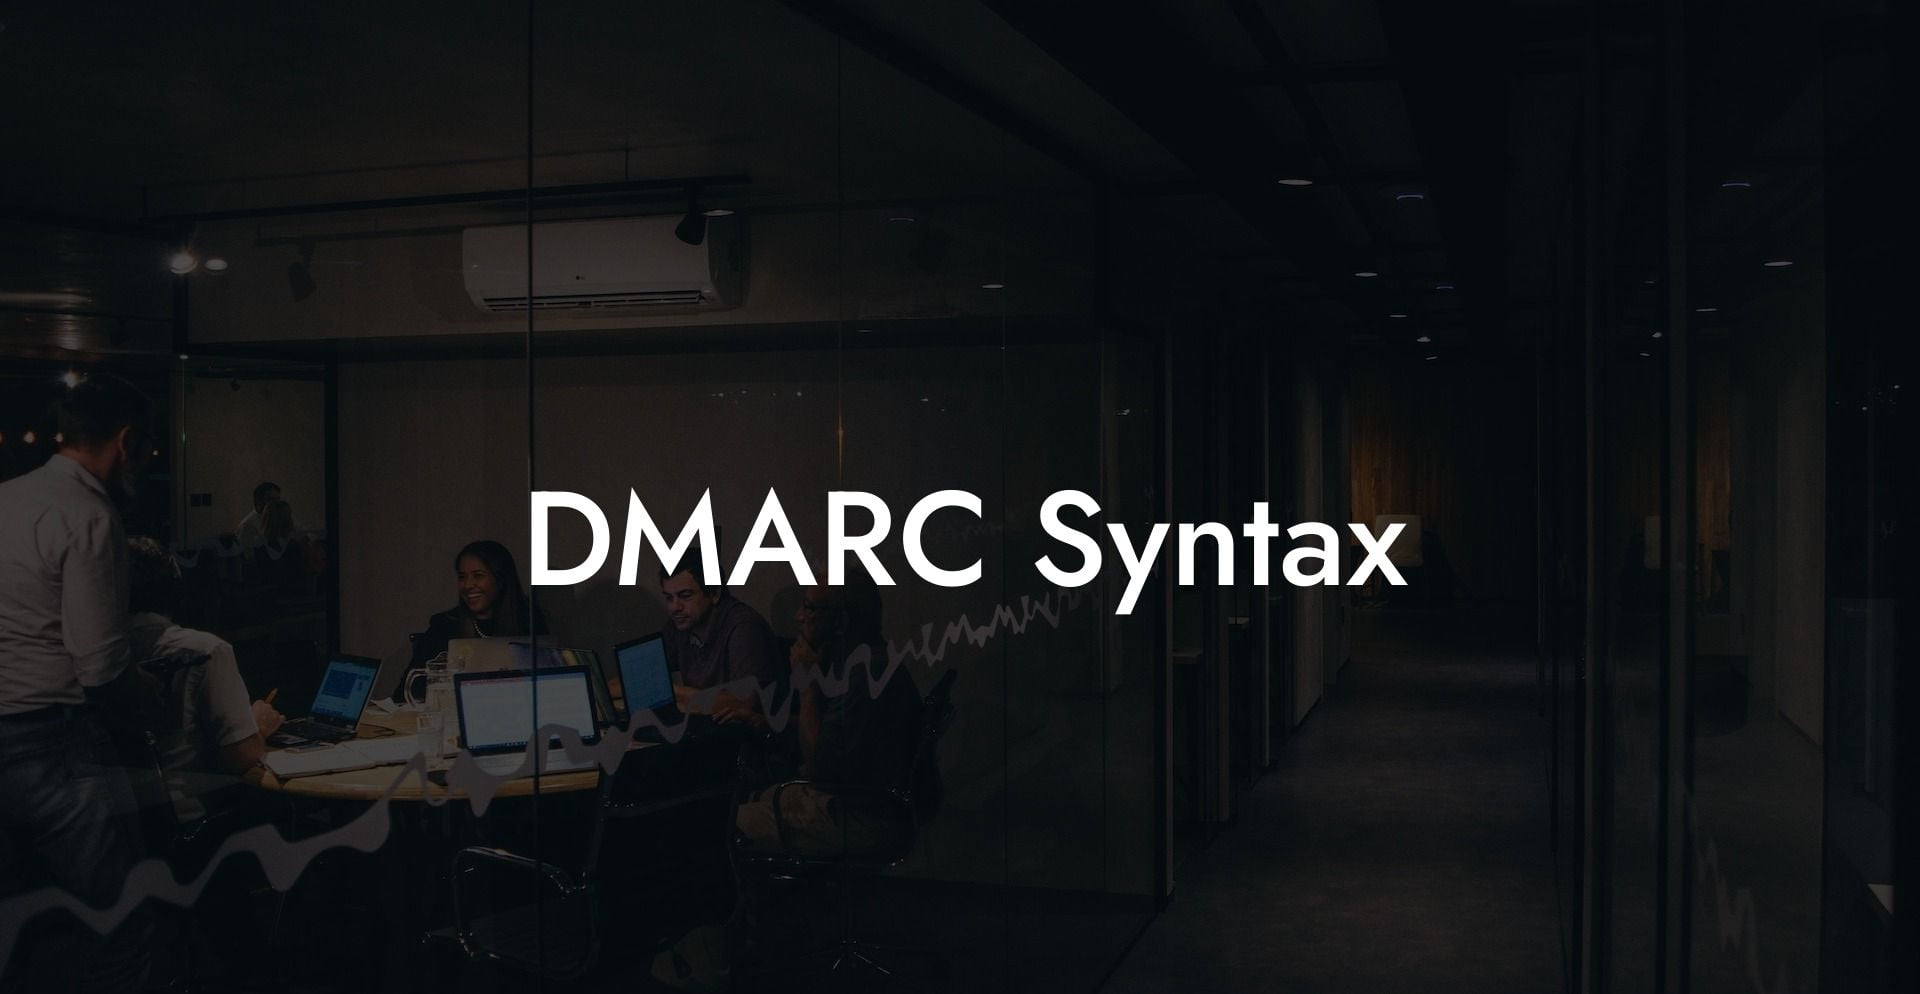 DMARC Syntax